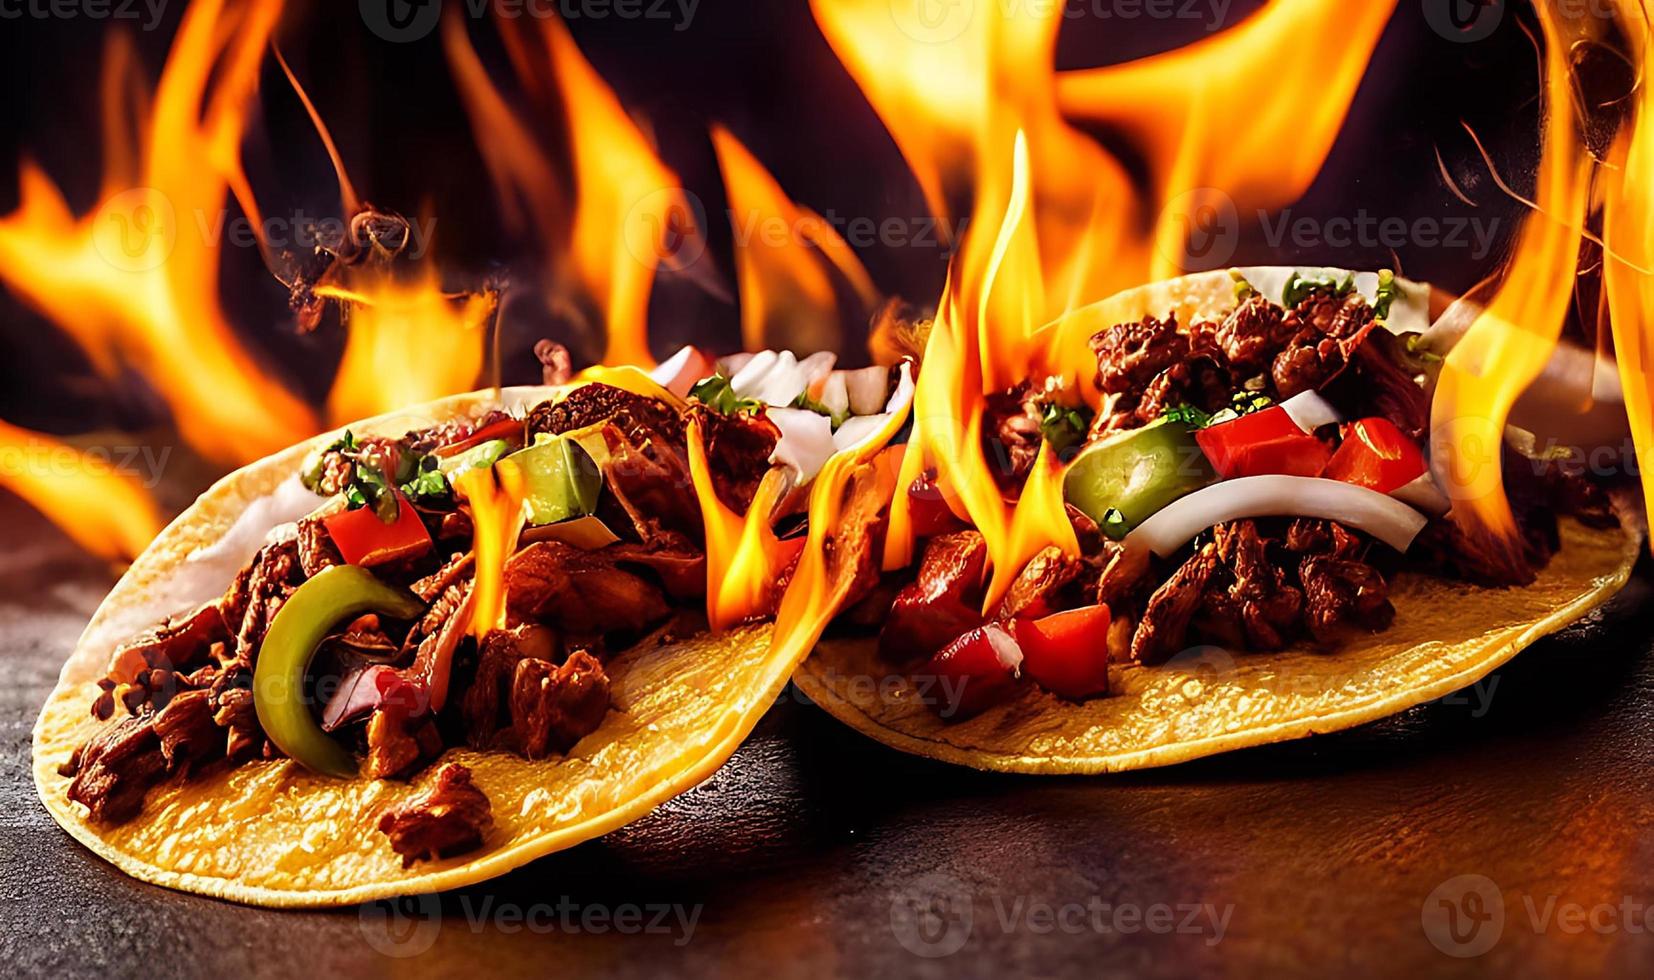 deliciosos tacos de comida mexicana. foto